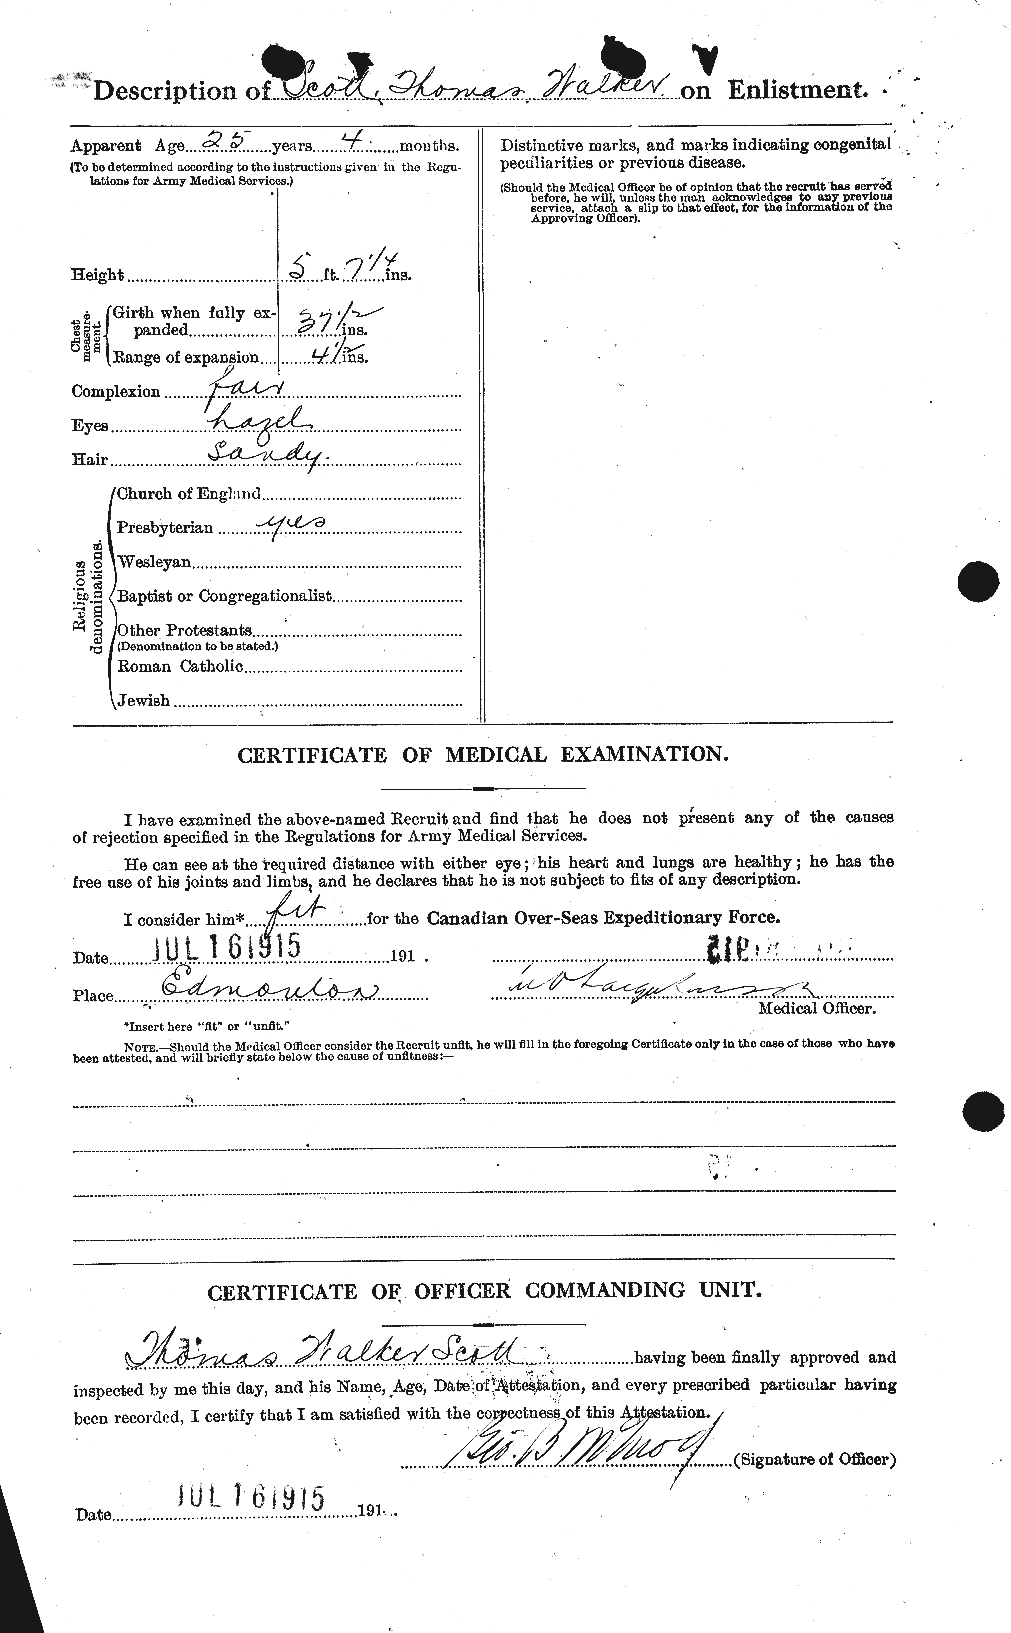 Dossiers du Personnel de la Première Guerre mondiale - CEC 088217b